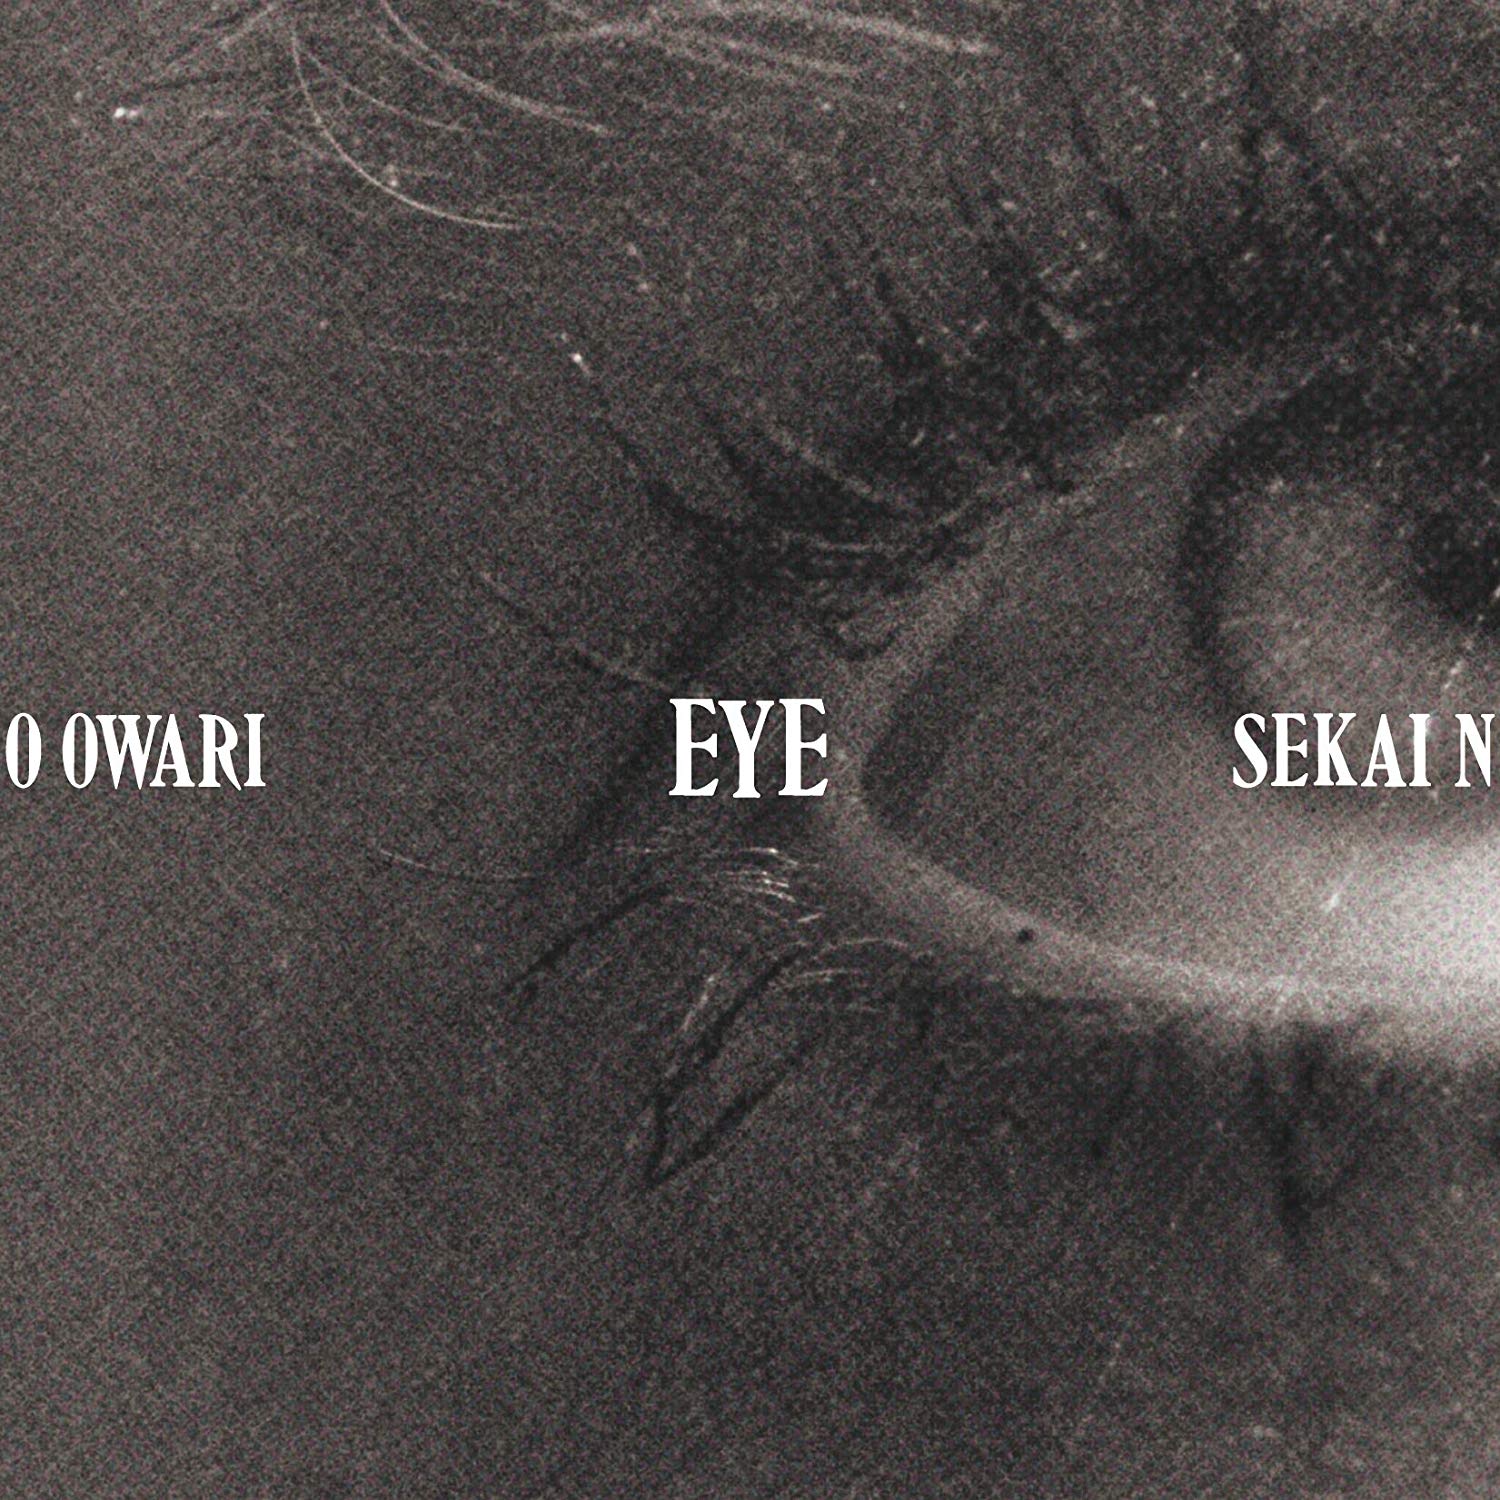 ドッペルゲンガー Eye収録 Sekai No Owariの歌詞 Rock Lyric ロック特化型無料歌詞検索サービス